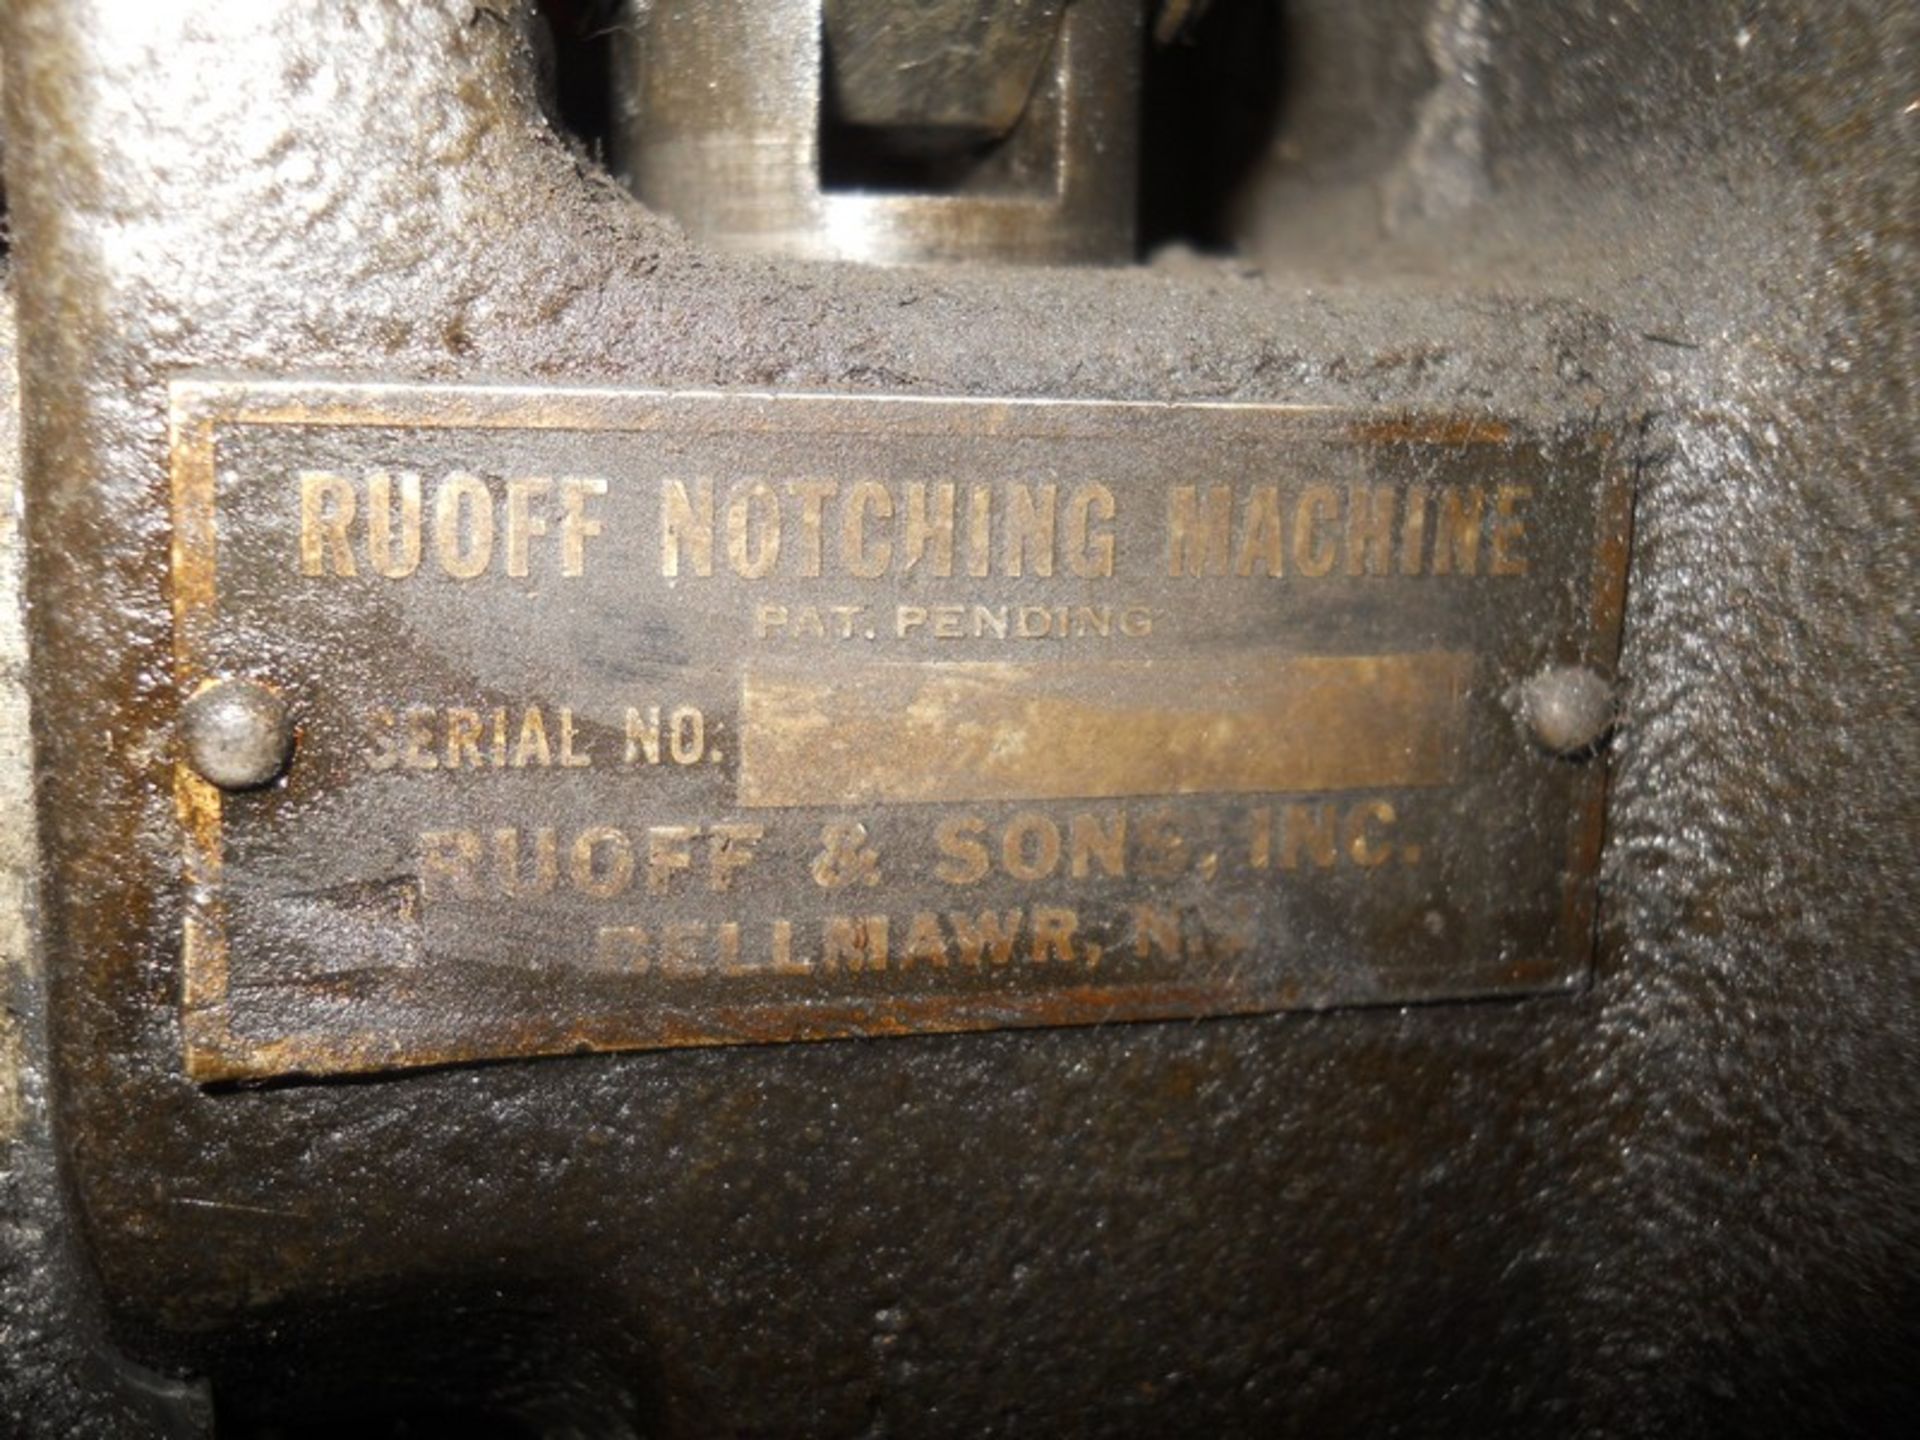 Rouff Notching Machine - Image 4 of 5